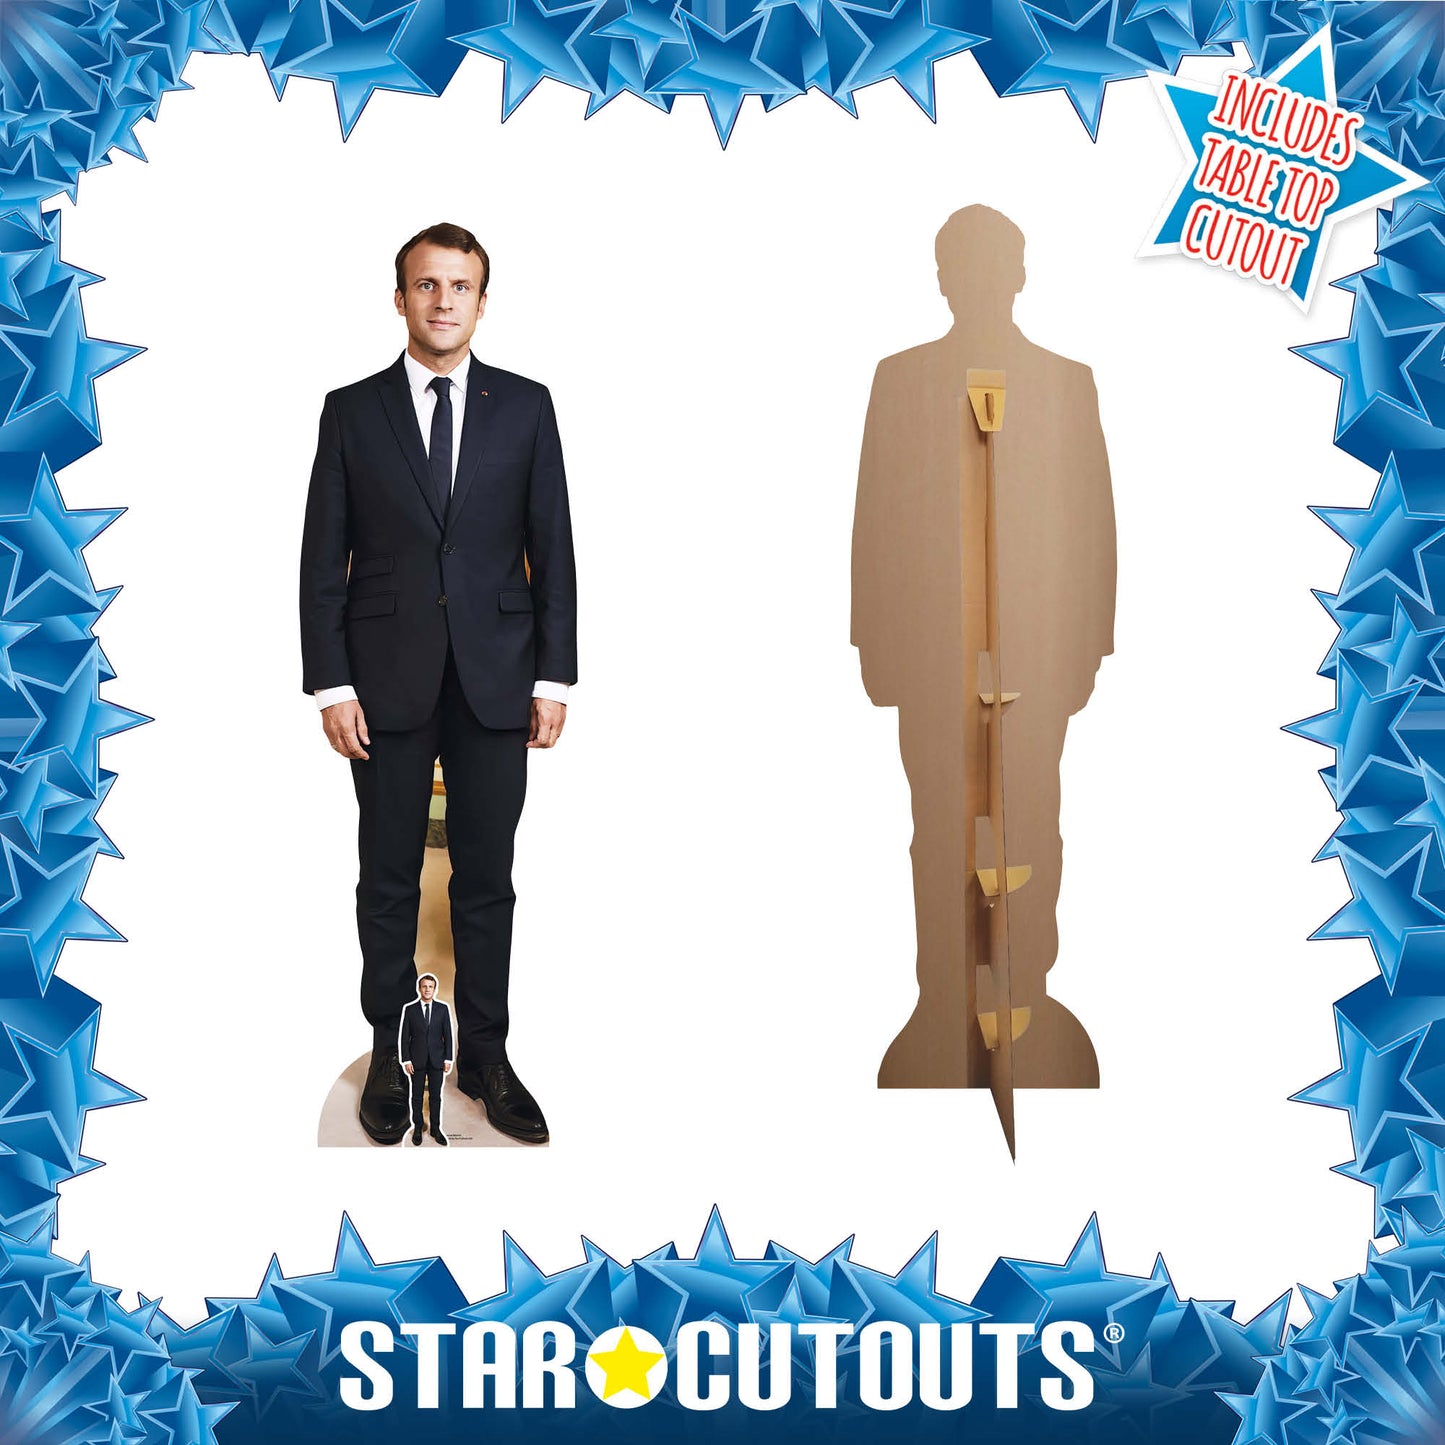 French President Emmanuel Macron  Cardboard Cutout Politician